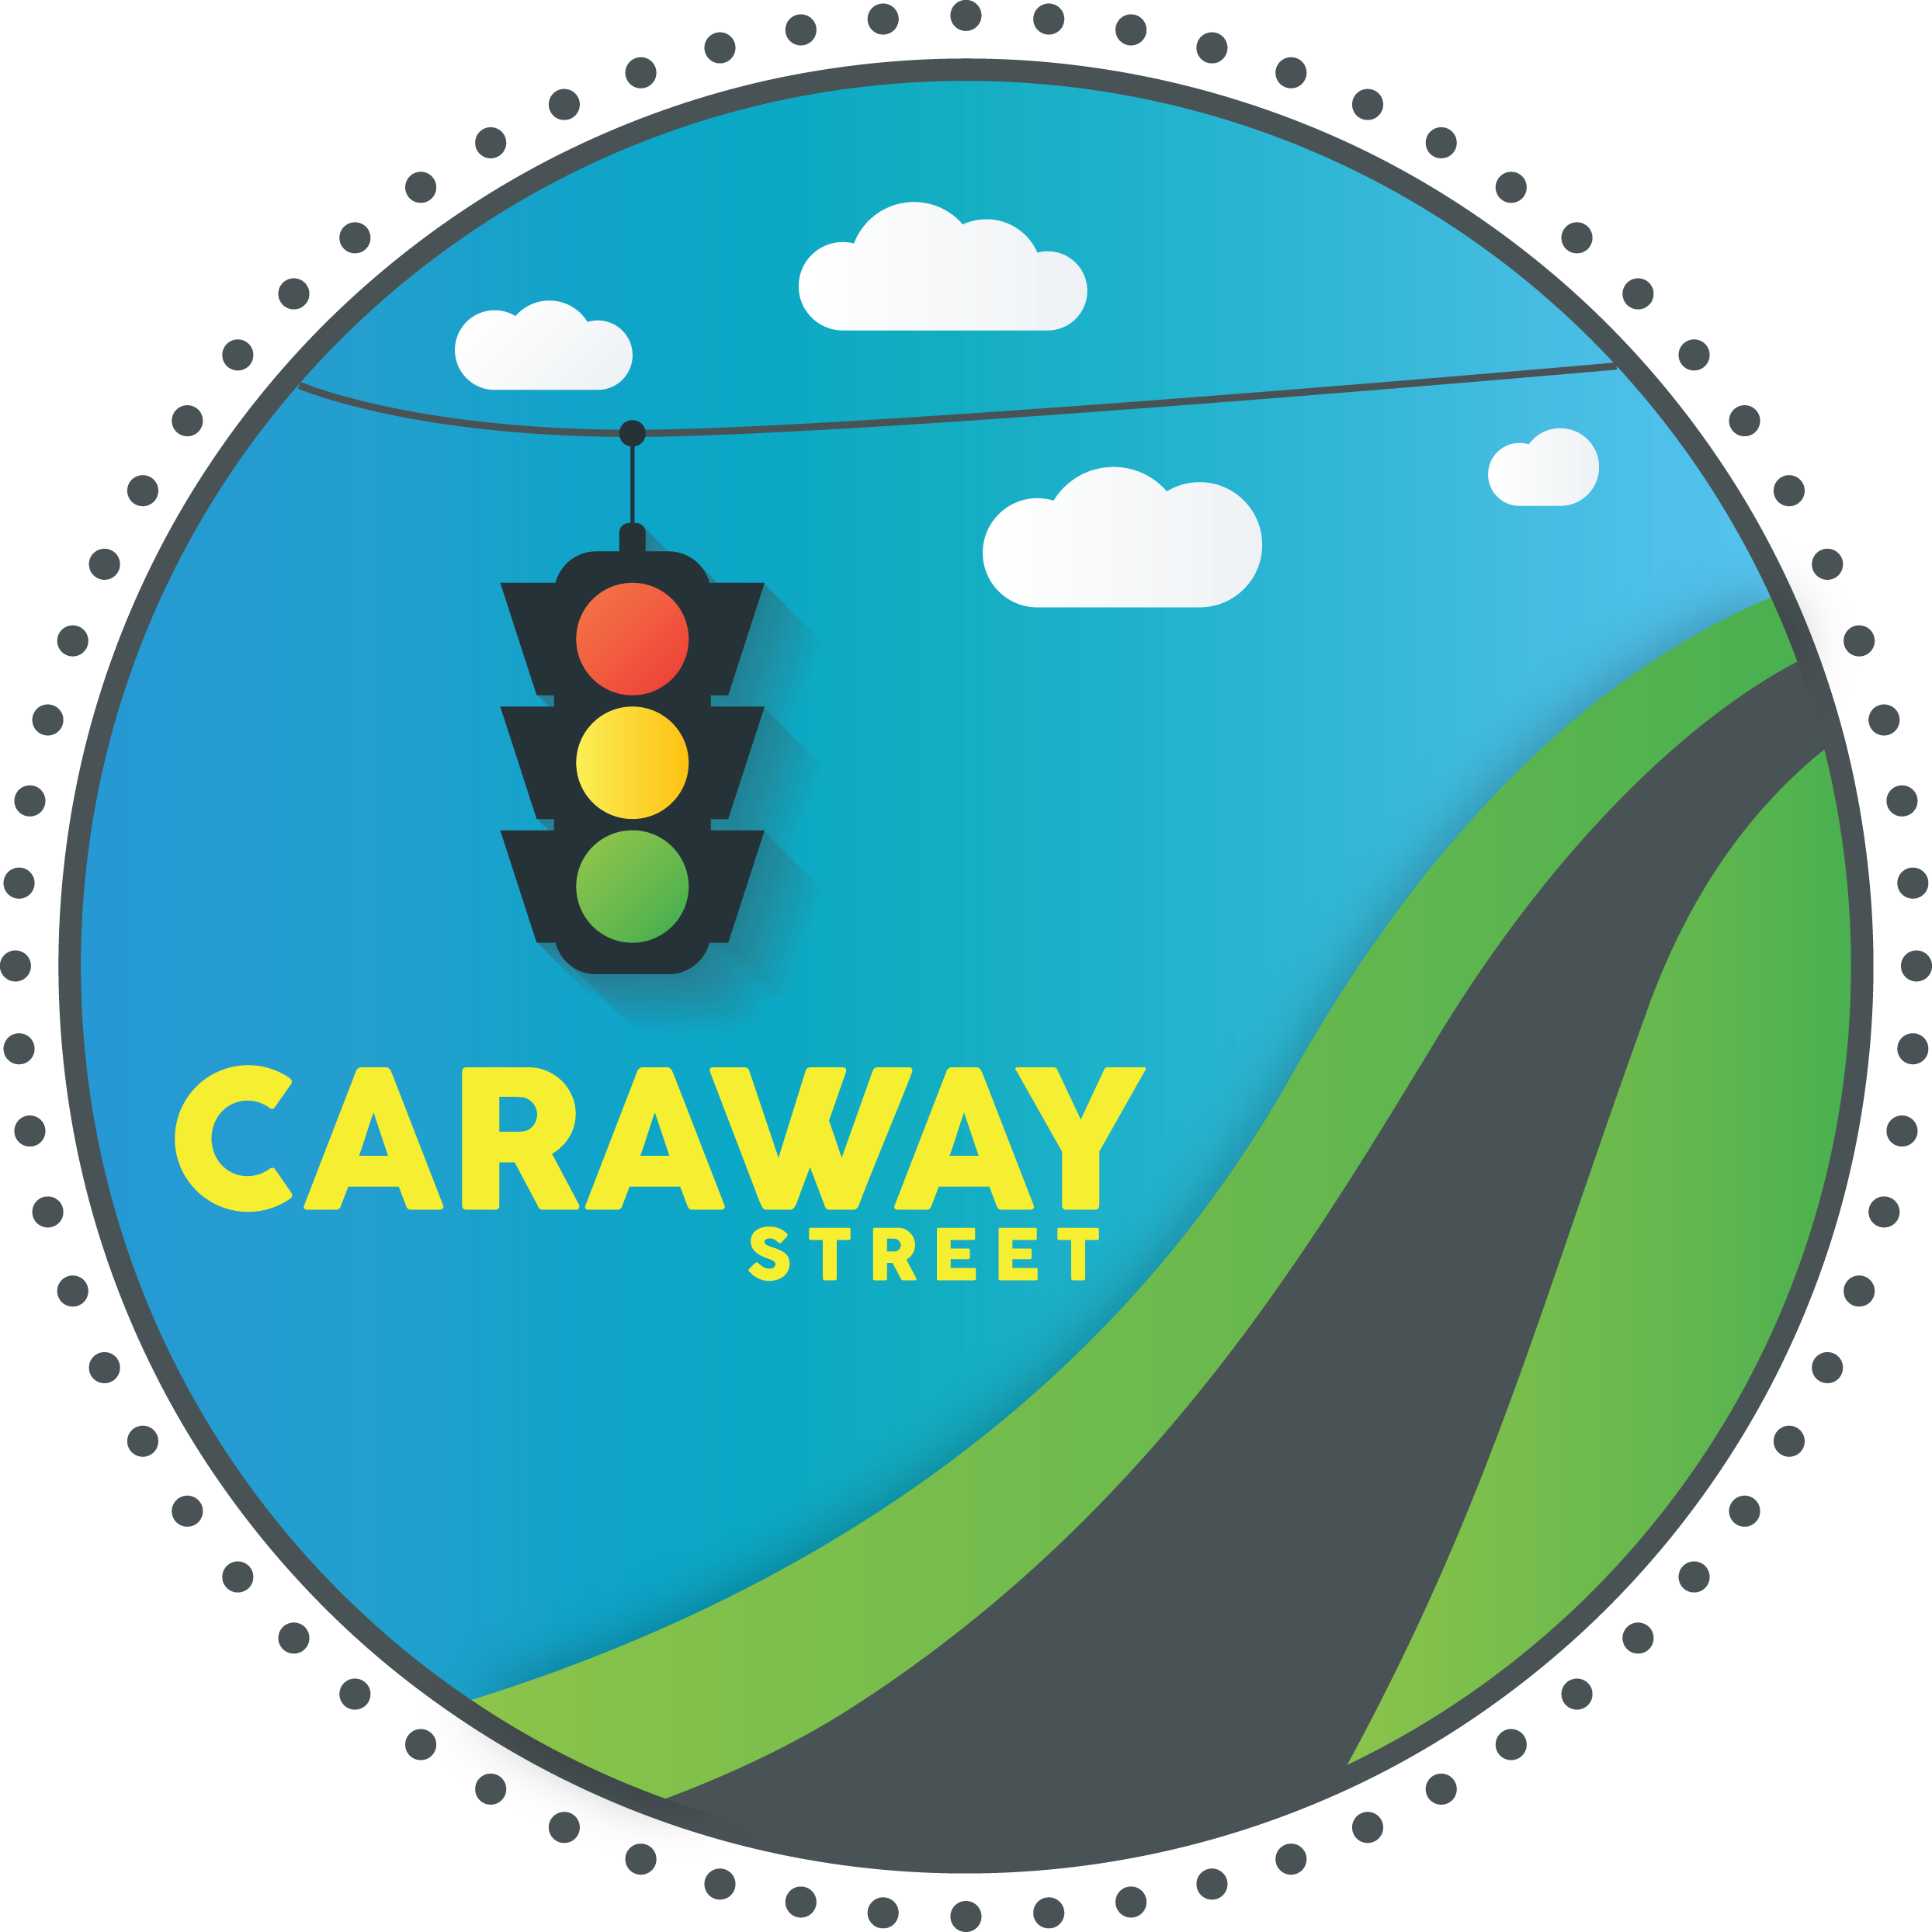 Caraway Street